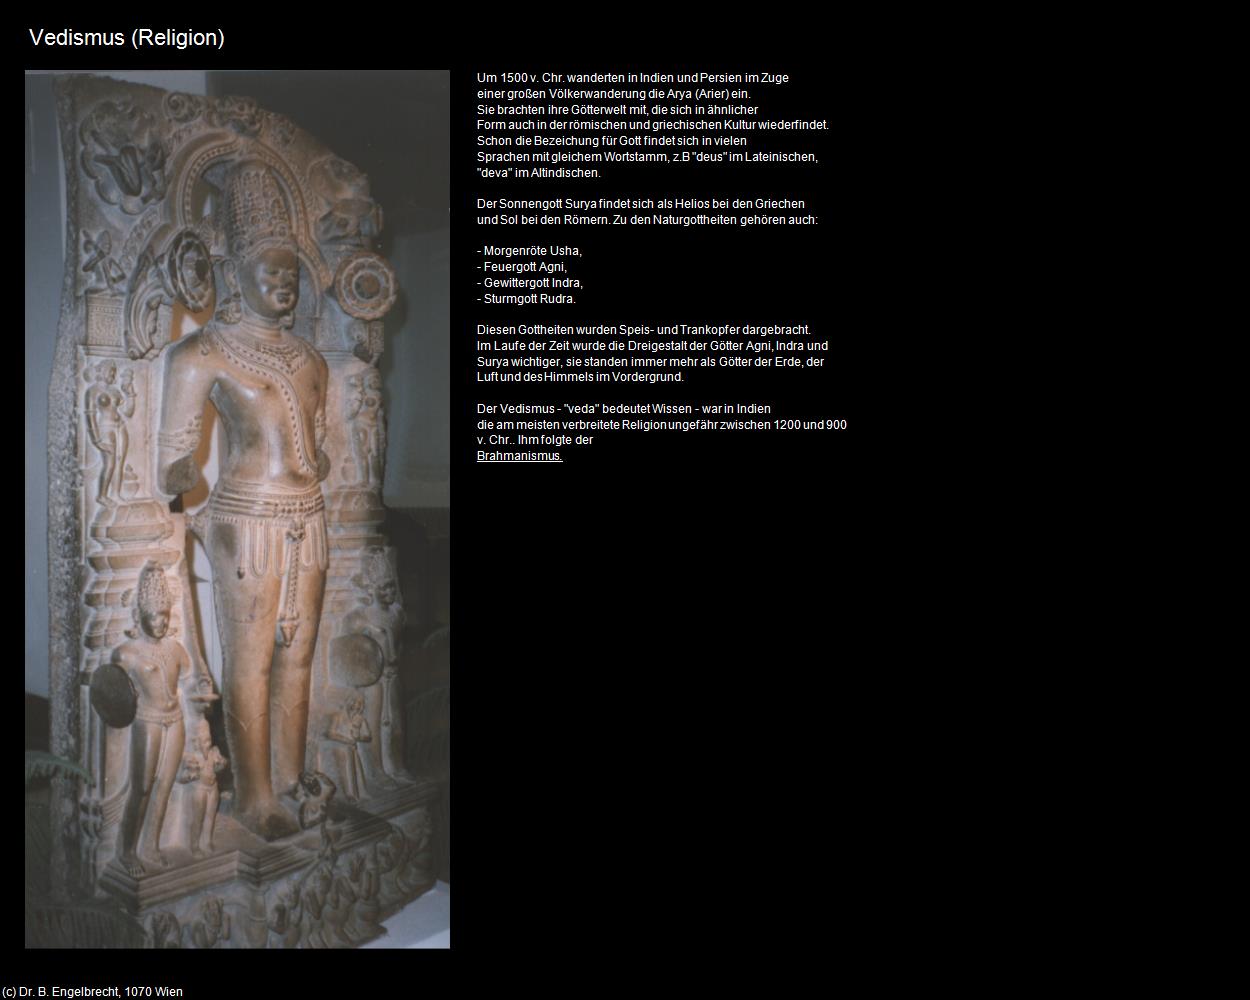 Vedismus (Indien-Religion) in Rajasthan - das Land der Könige(c)B.Engelbrecht